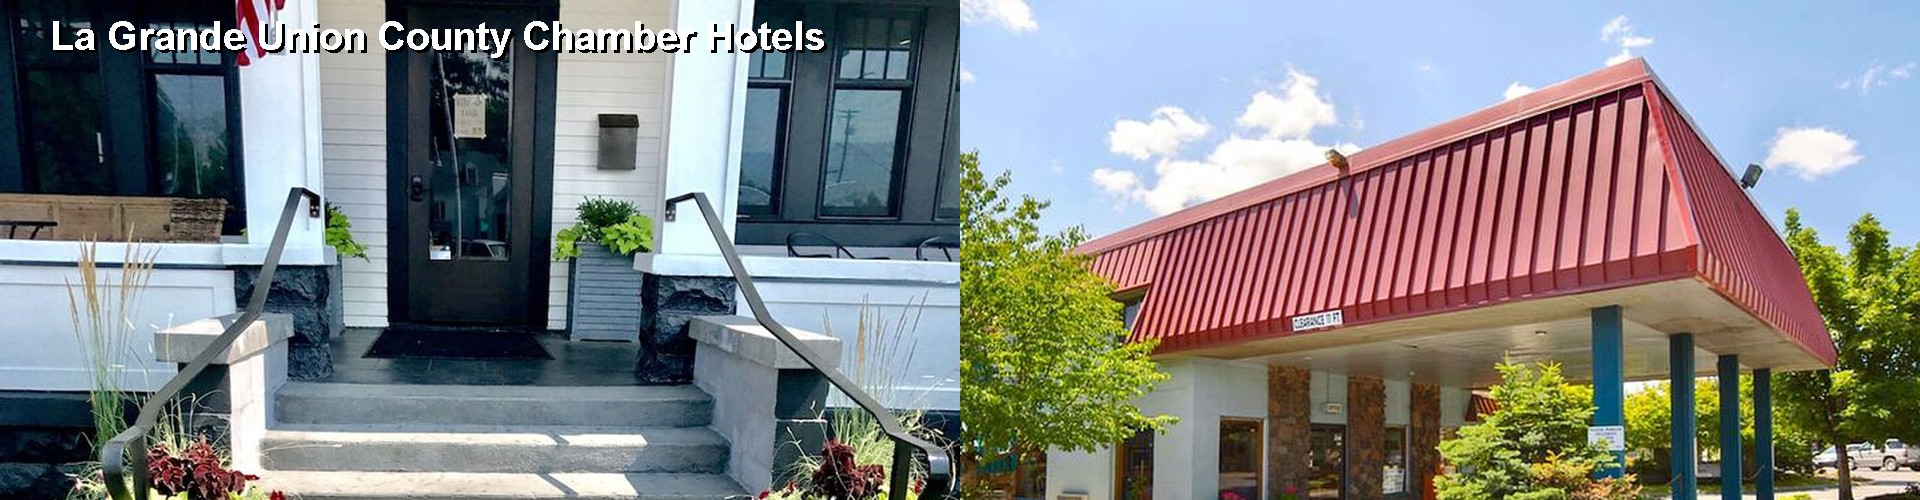 1 Best Hotels near La Grande Union County Chamber